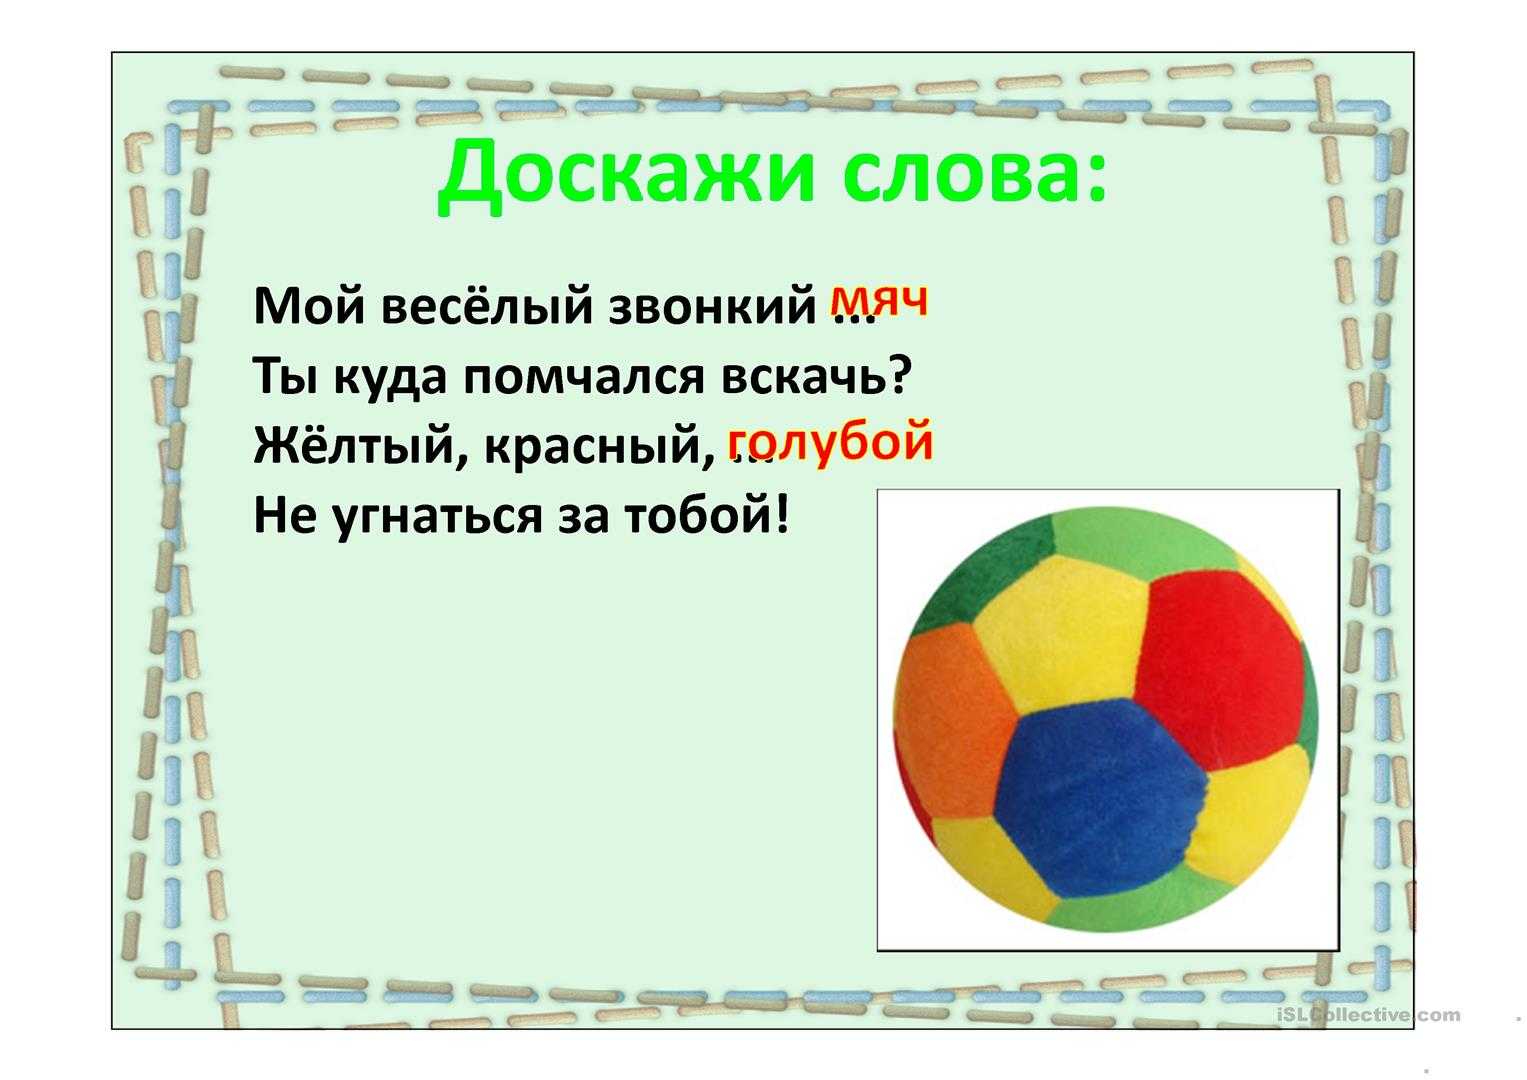 Загадка про мячи фитболы для детей. интересные загадки про мяч